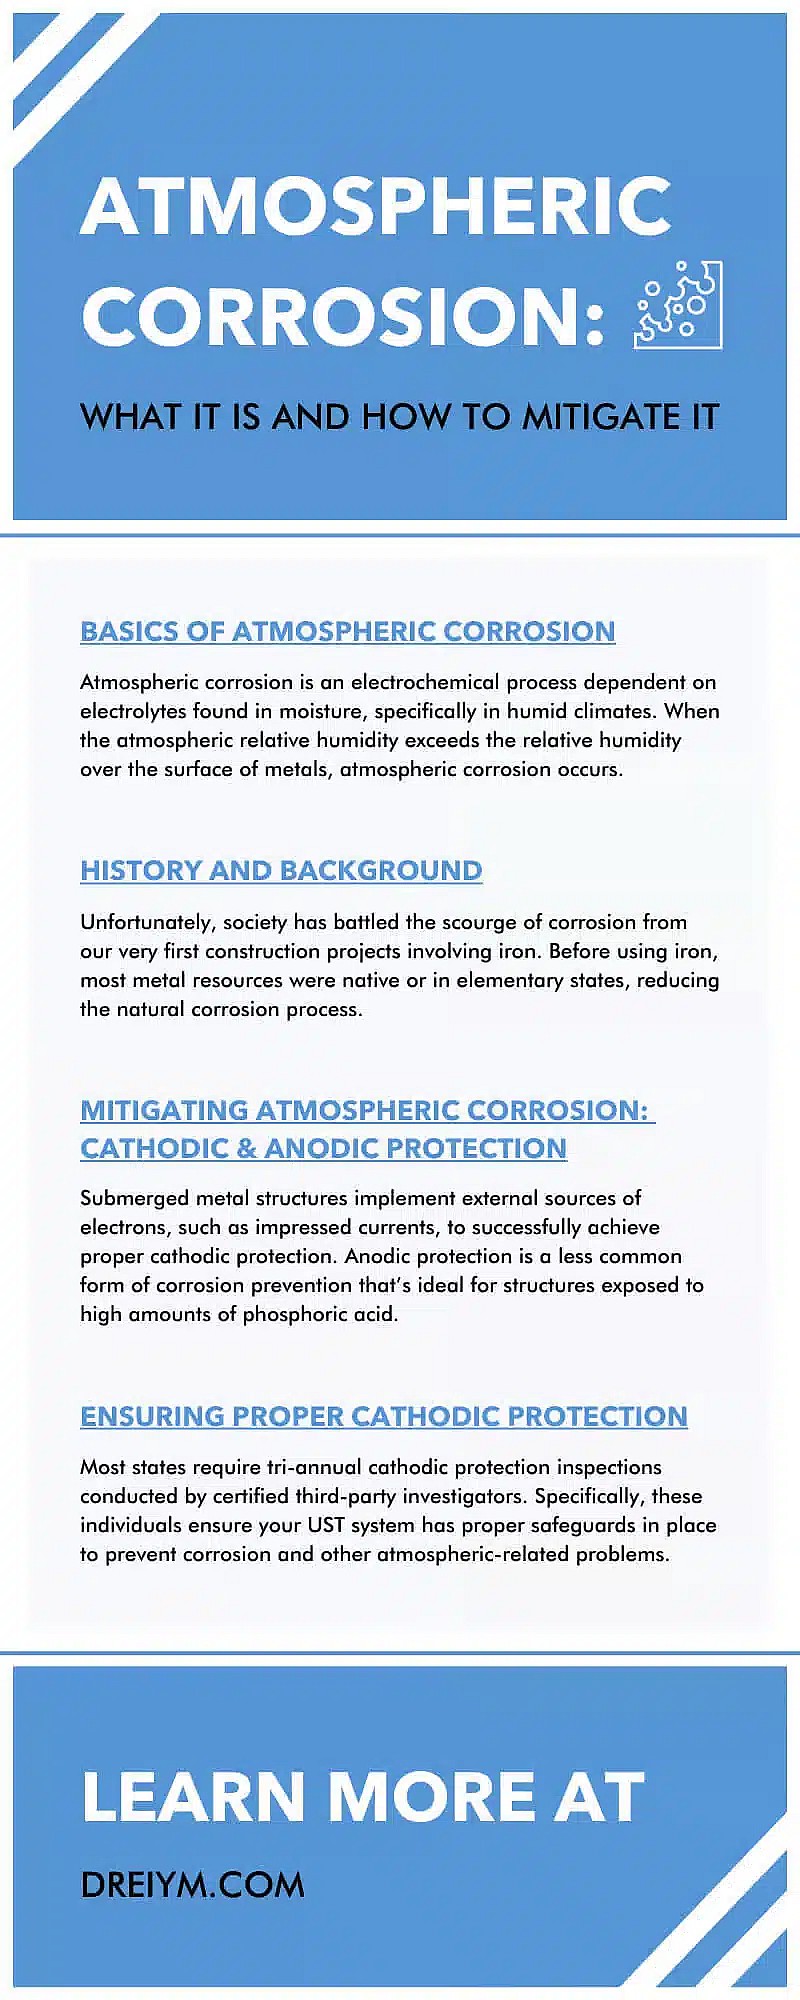 Corrosion atmosphérique : Ce qu'elle est et comment l'atténuer